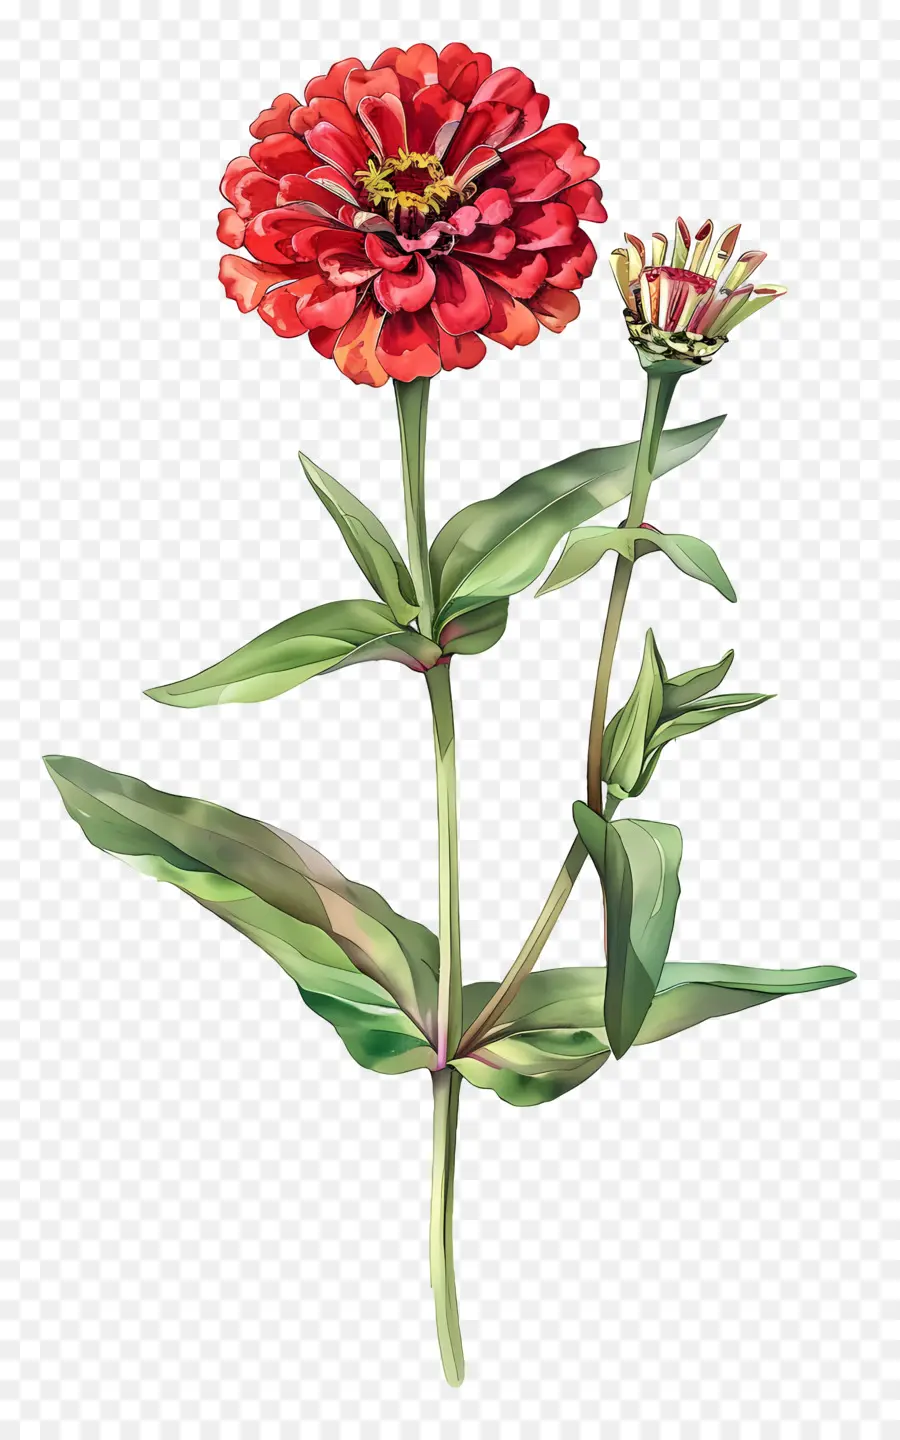 fiore rosso - Fiore rosso zinnia con foglie verdi, colore vibrante